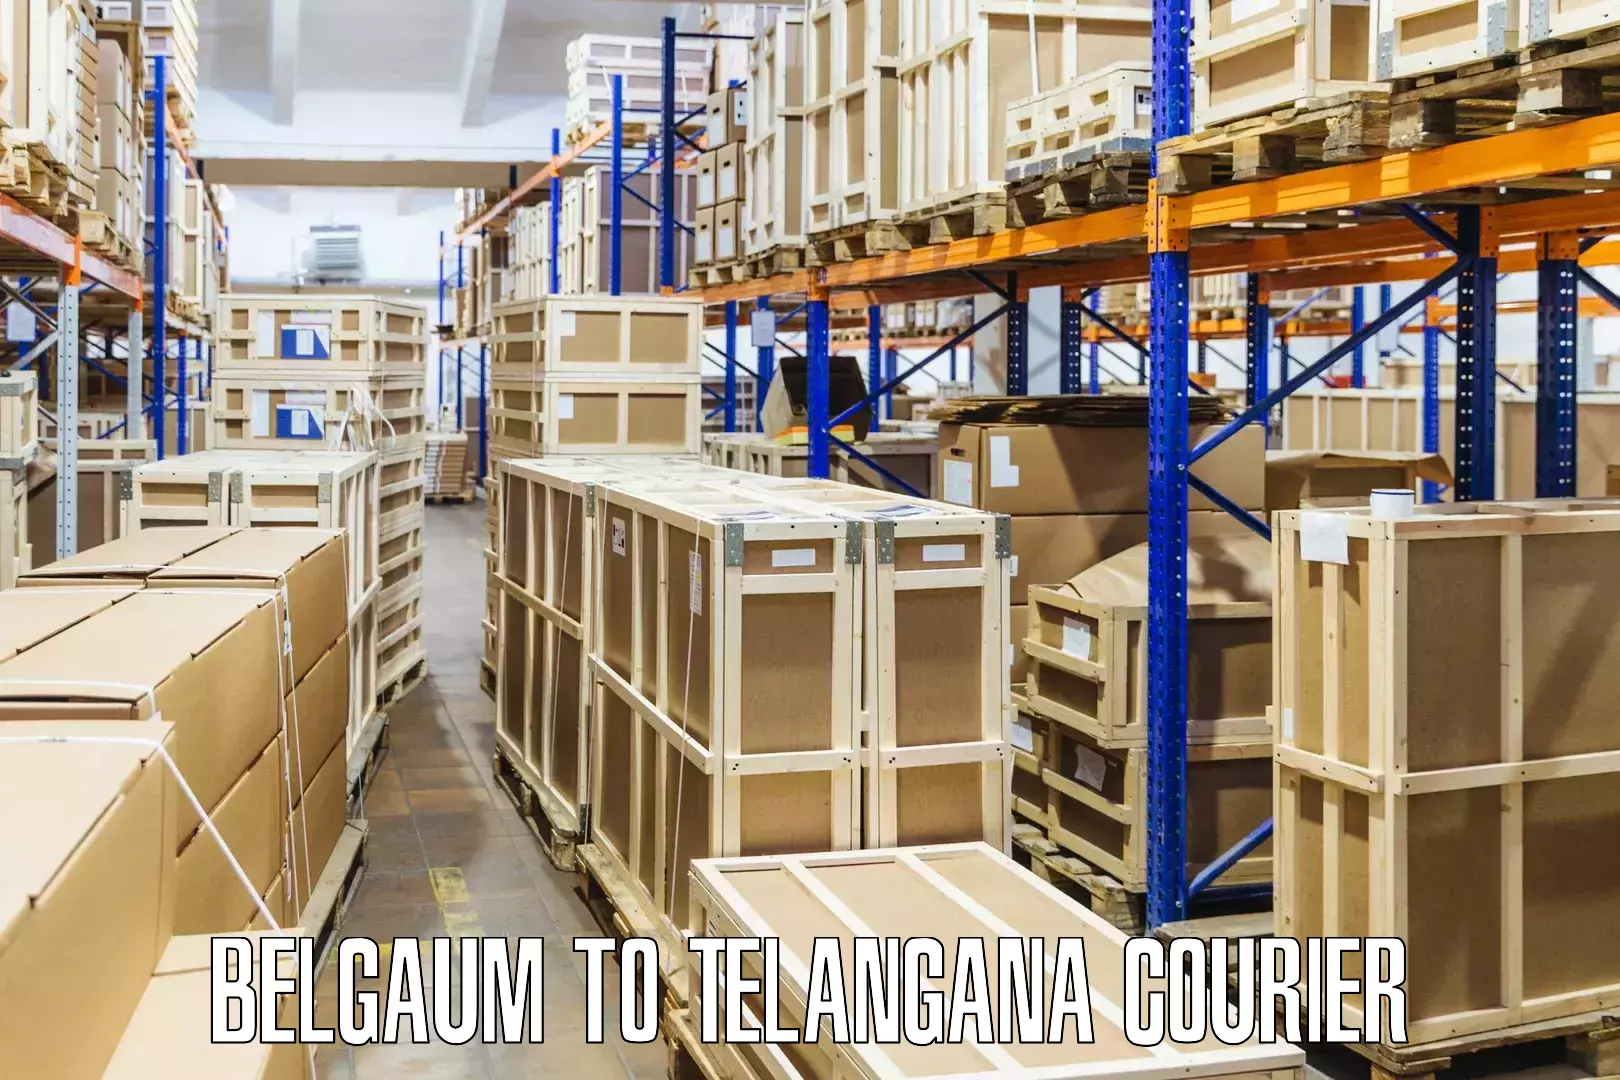 Door-to-door freight service Belgaum to Telangana